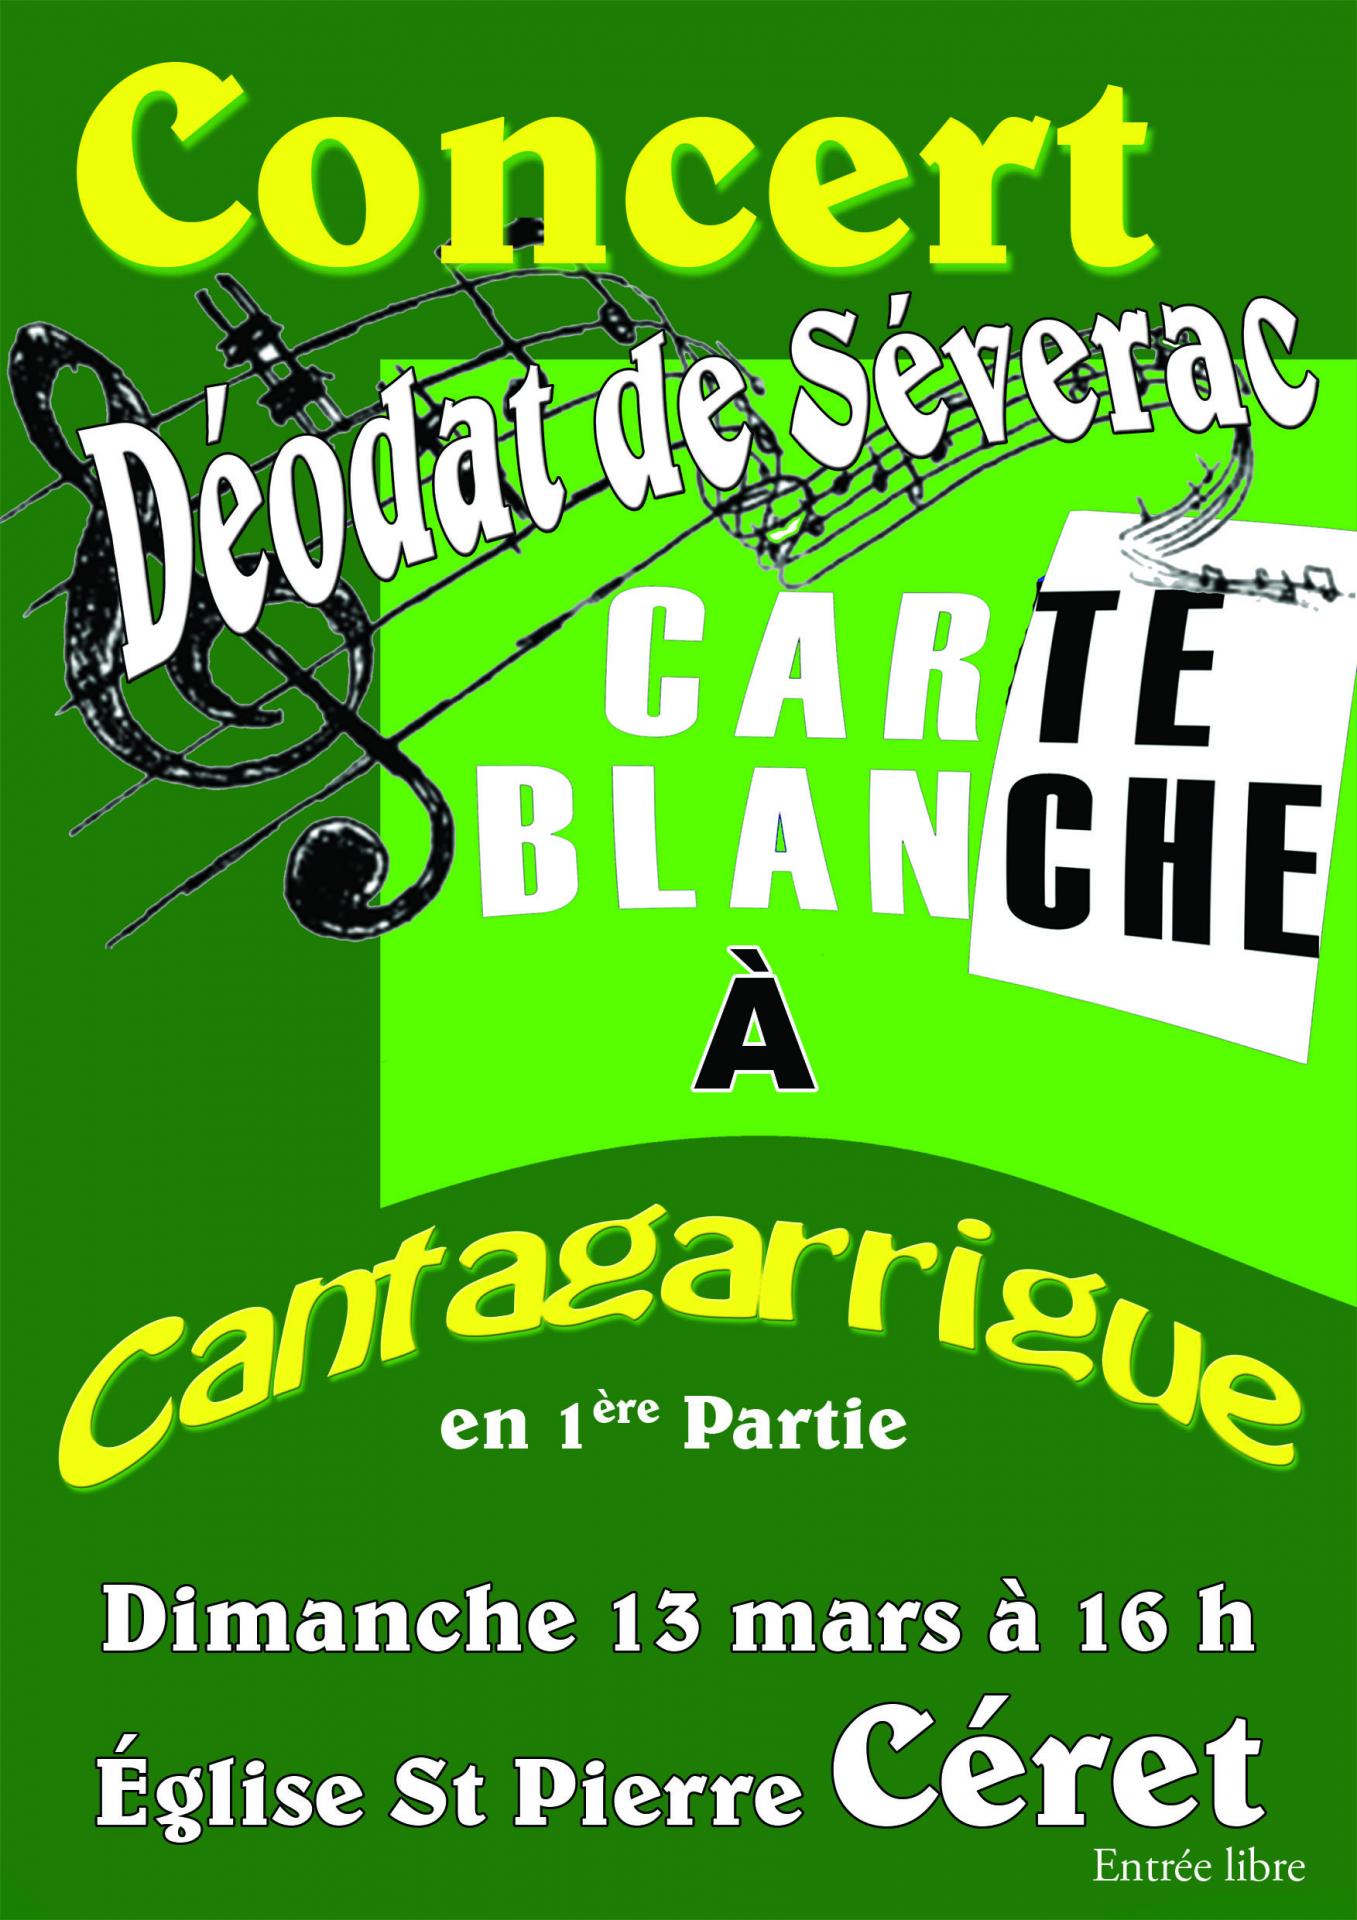 Carte blanche cantagarrigue 1